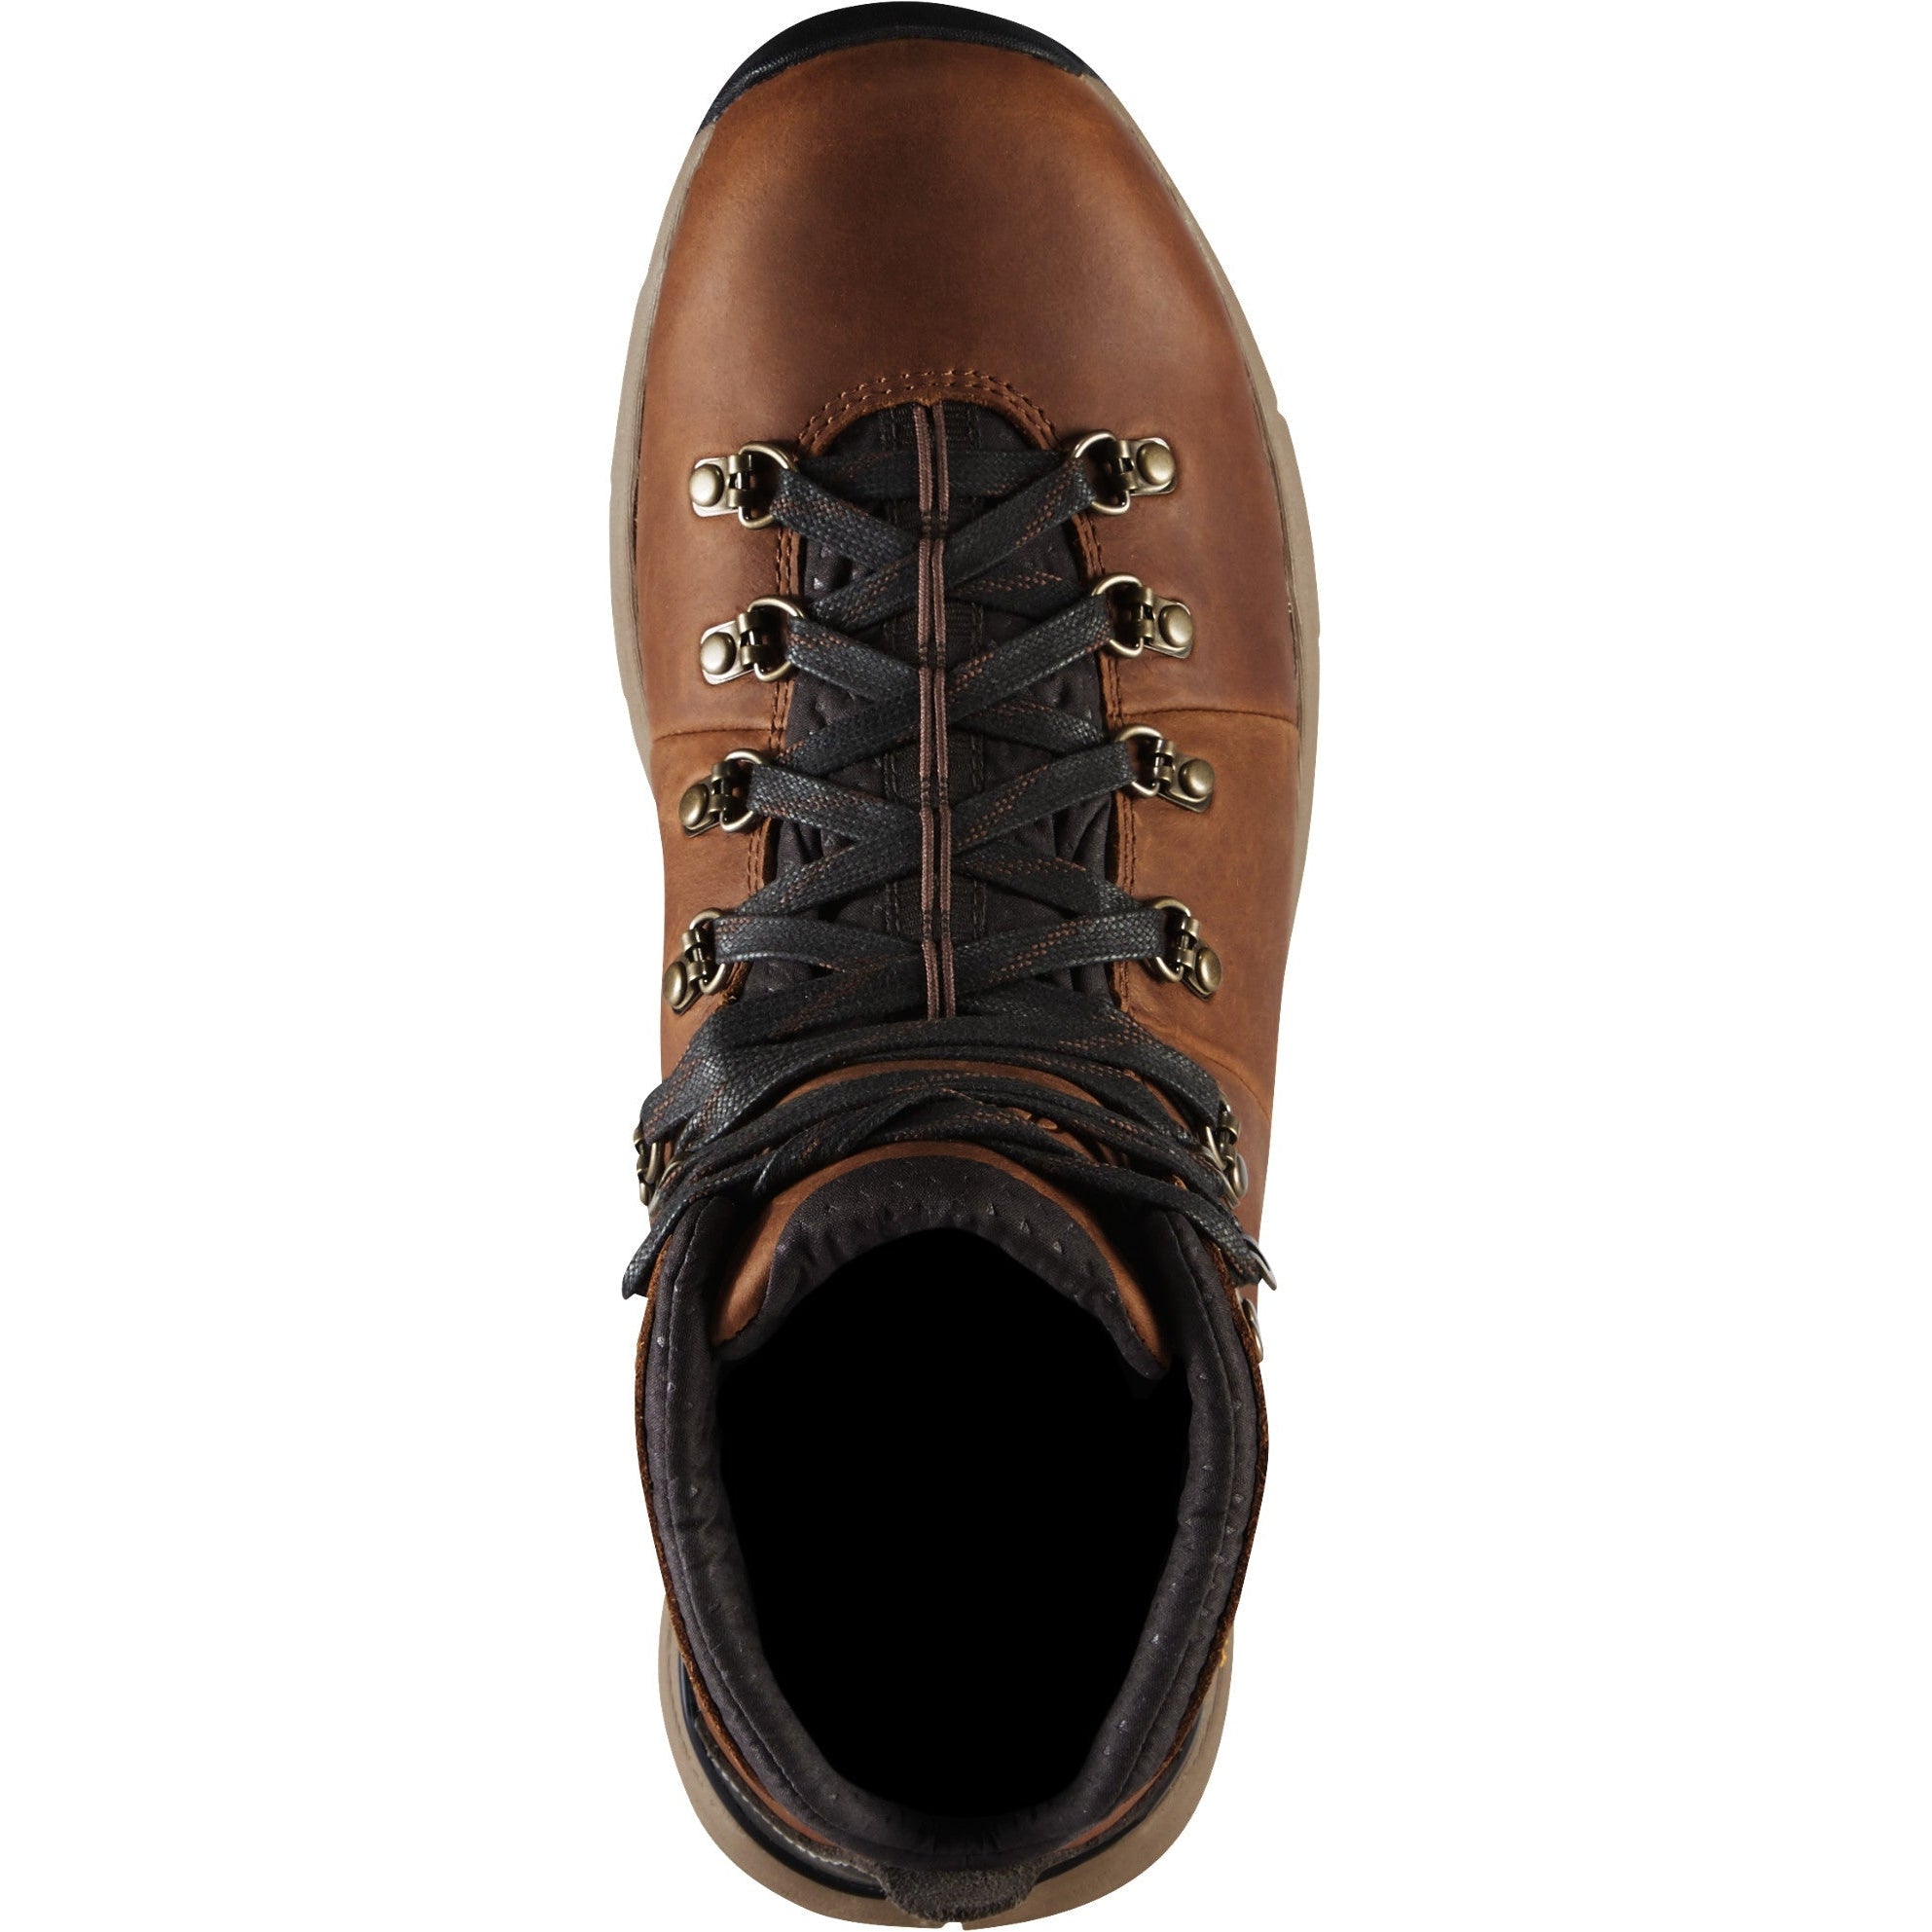 Danner Men's Mountain 600 4.5" WP Hiking Boot - Brown - 62250  - Overlook Boots